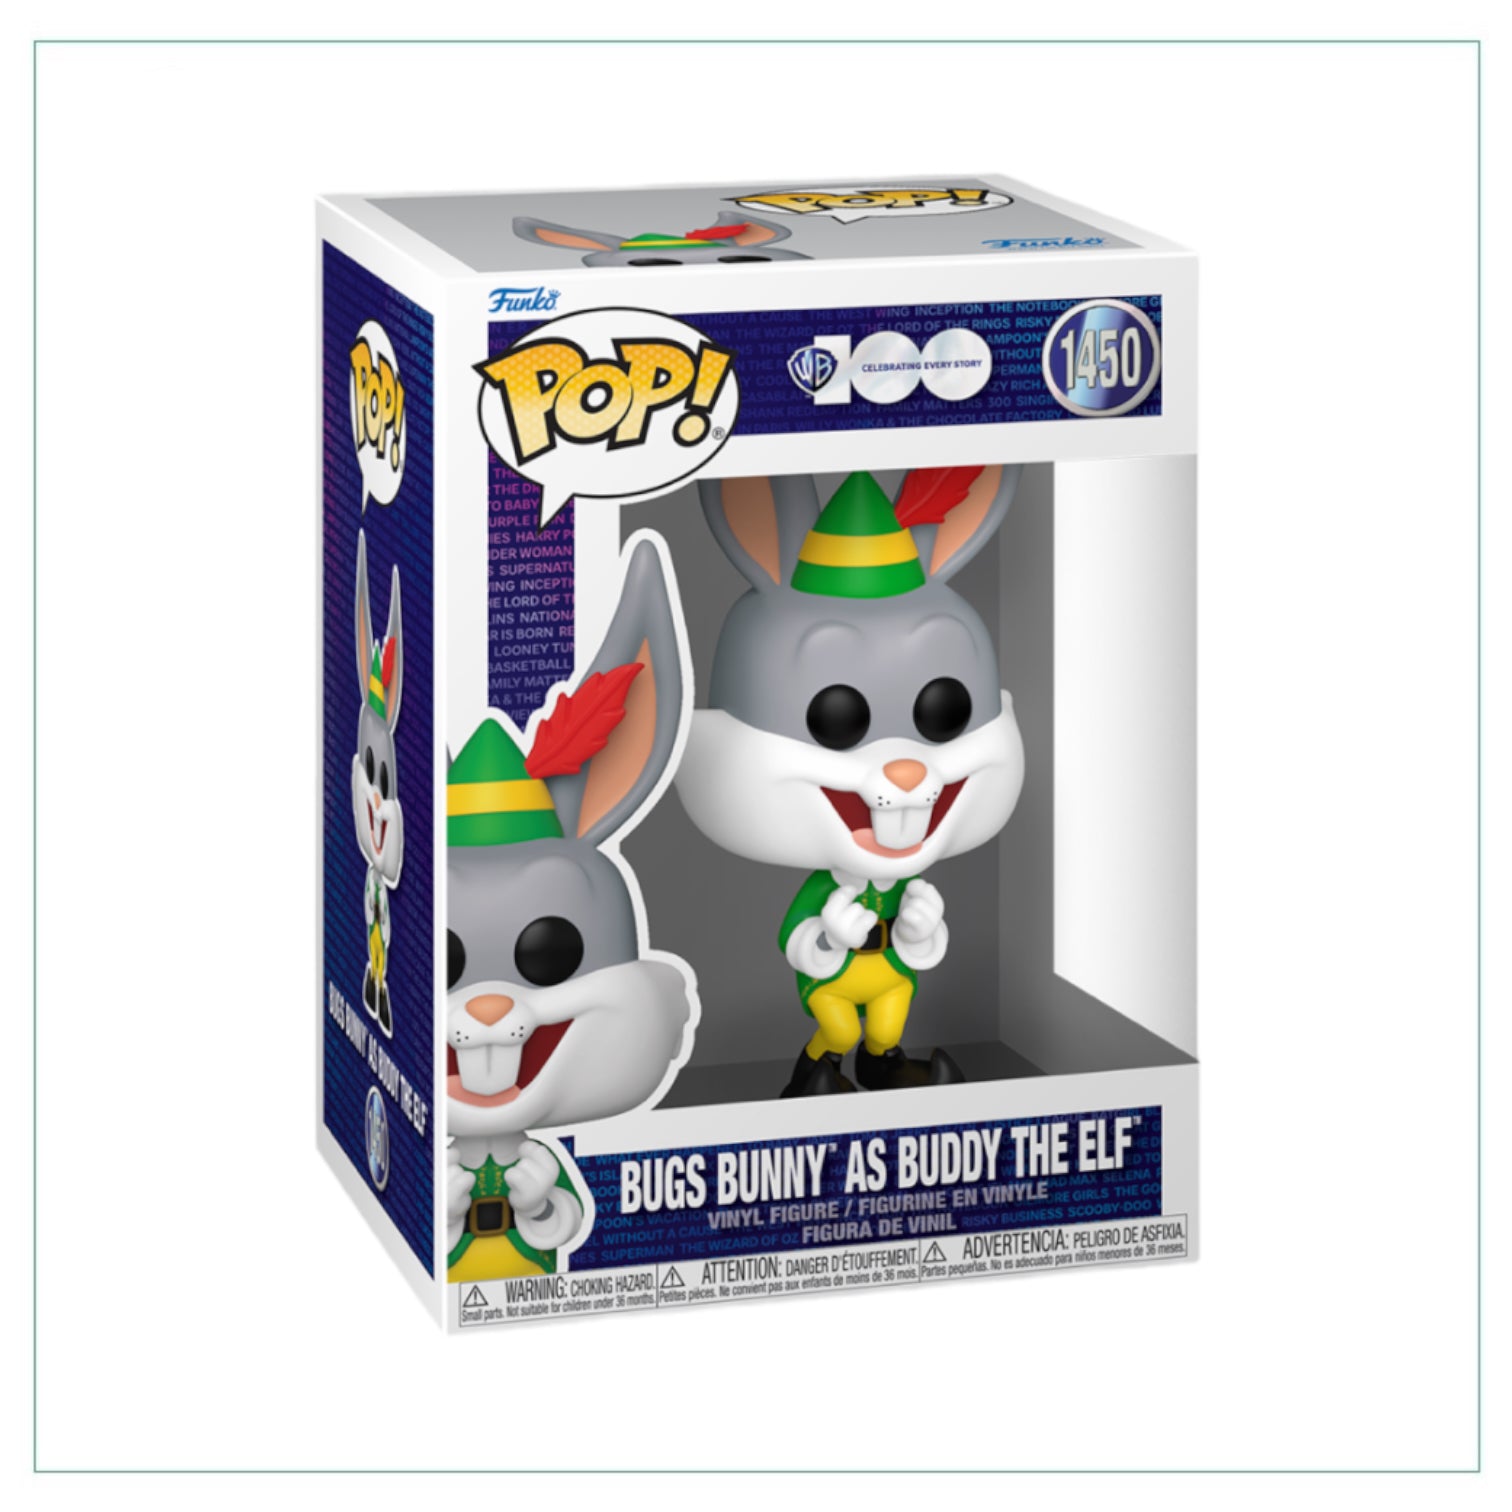 Bugs Bunny as Buddy the Elf #1450 Funko Pop! - WB 100